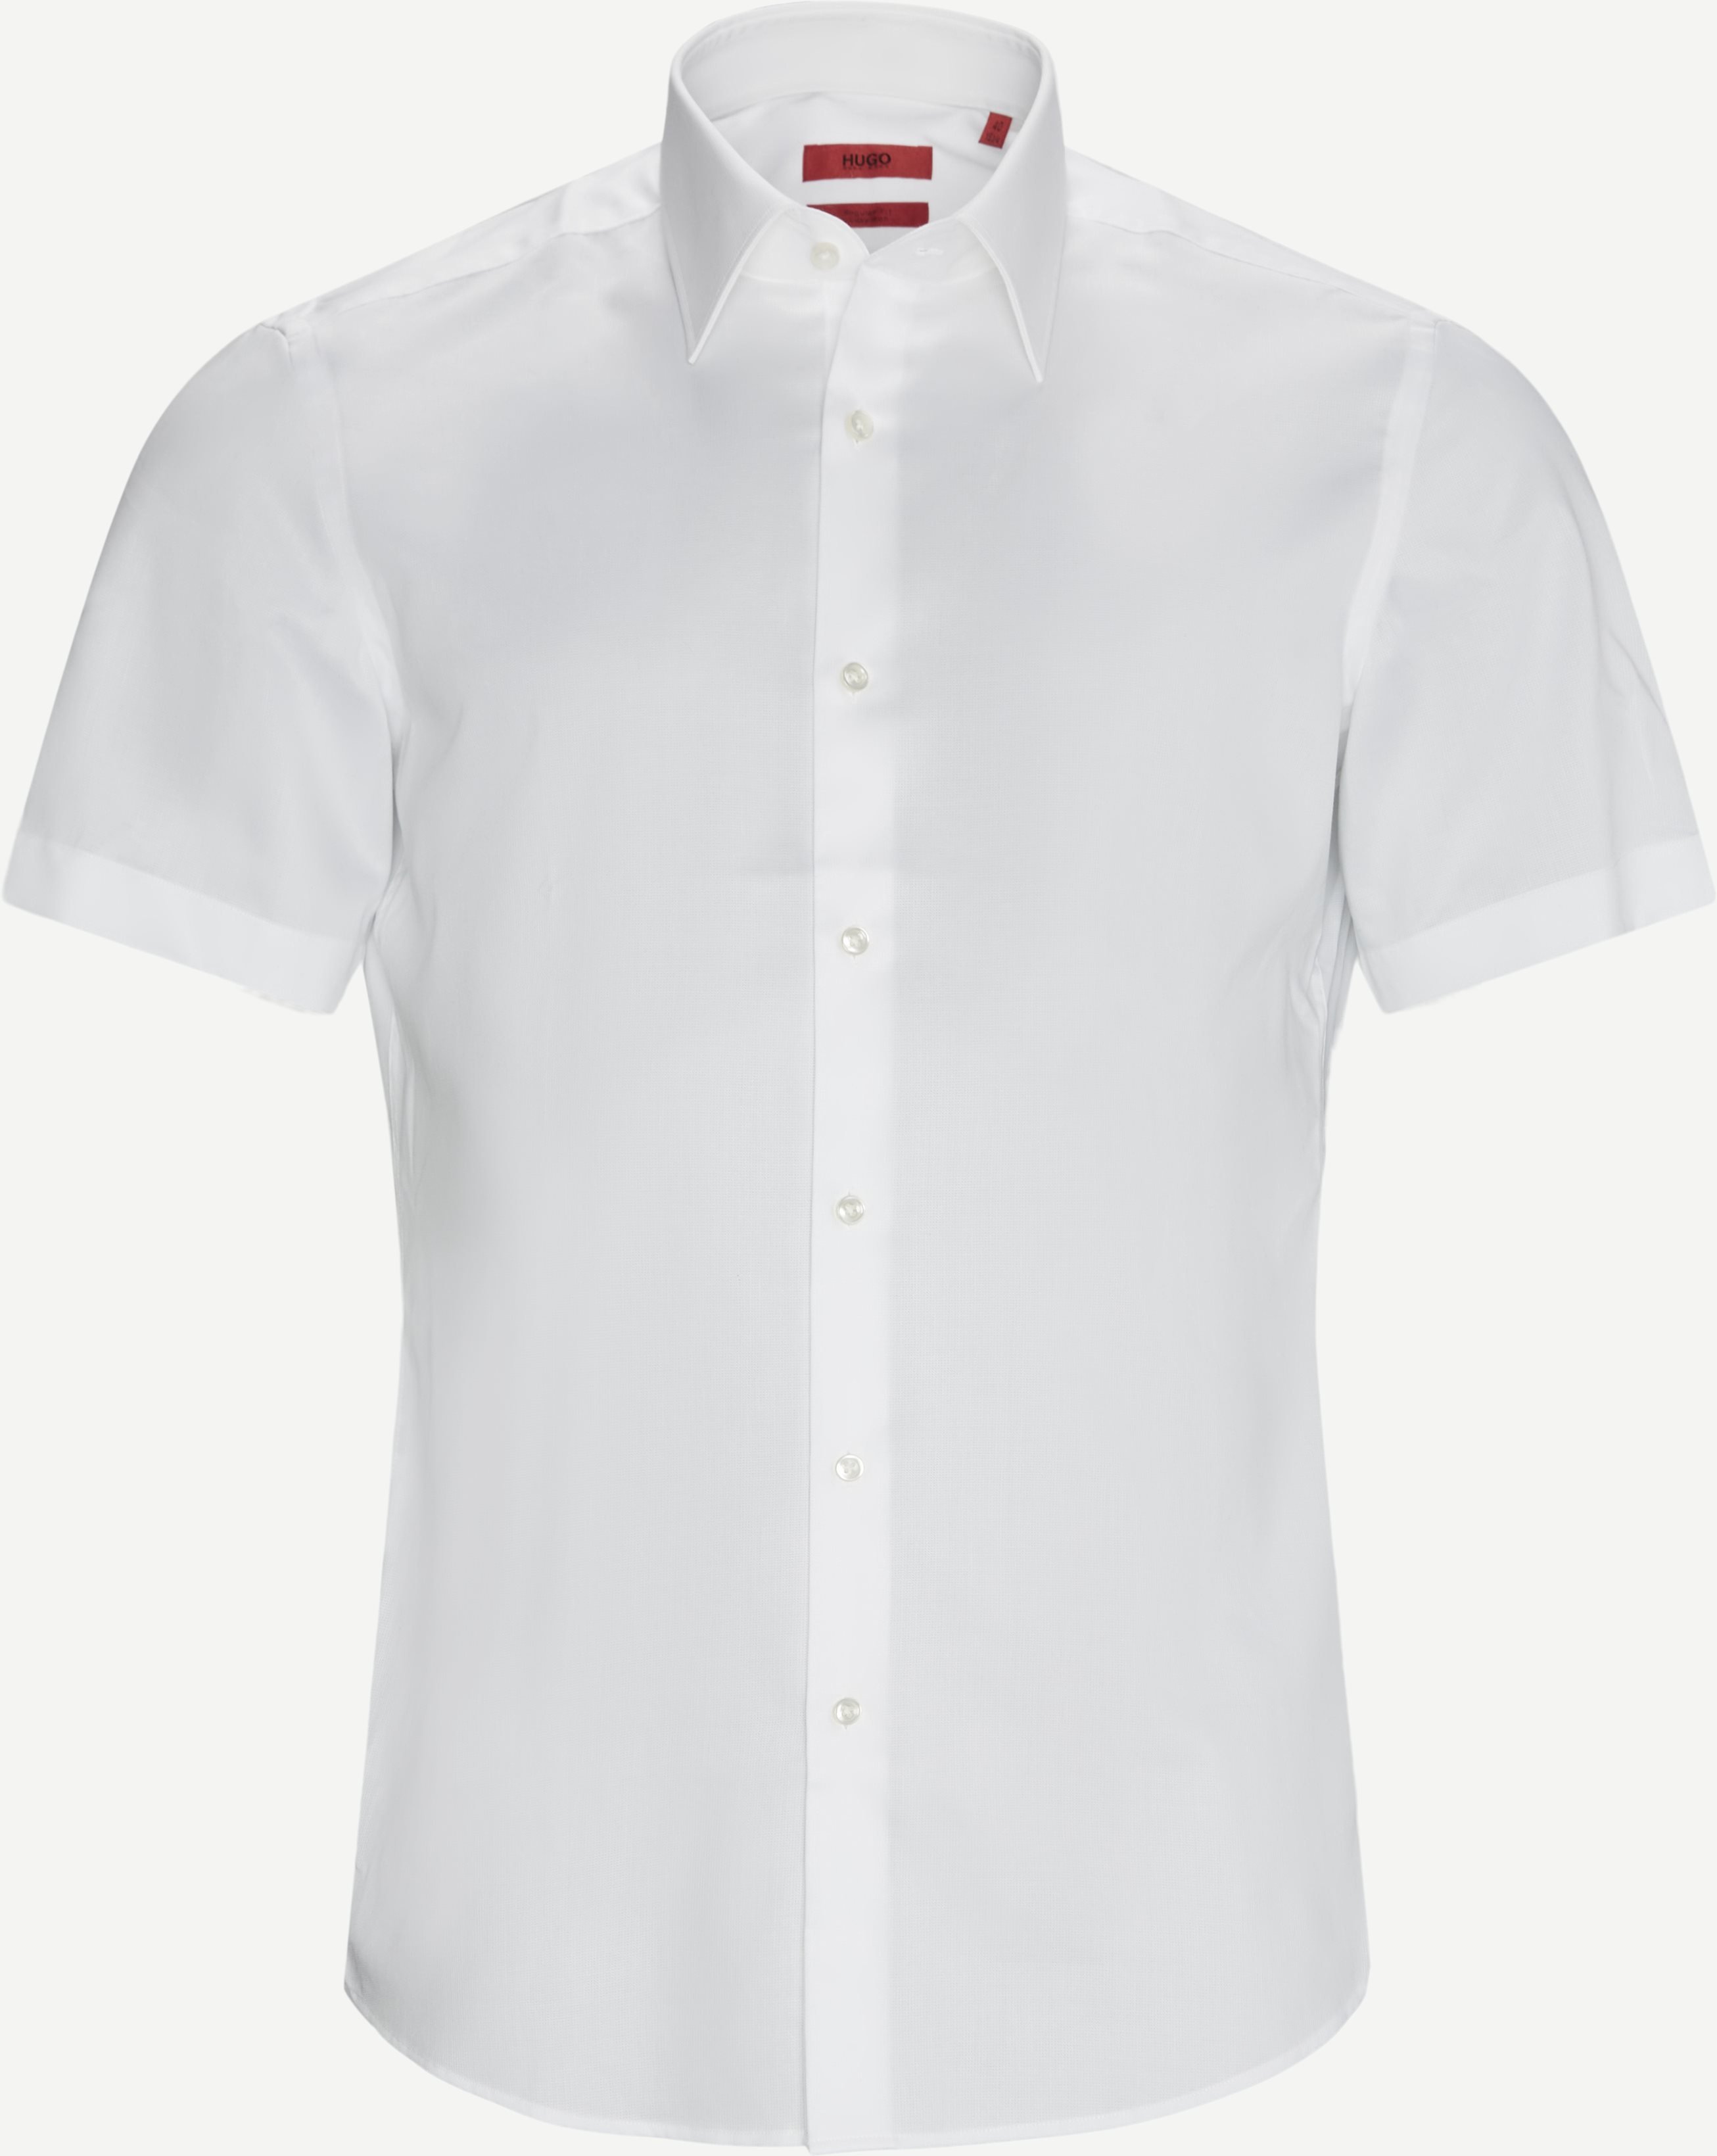 Venzino K/Æ Shirt - Kortærmede skjorter - Regular fit - Hvid